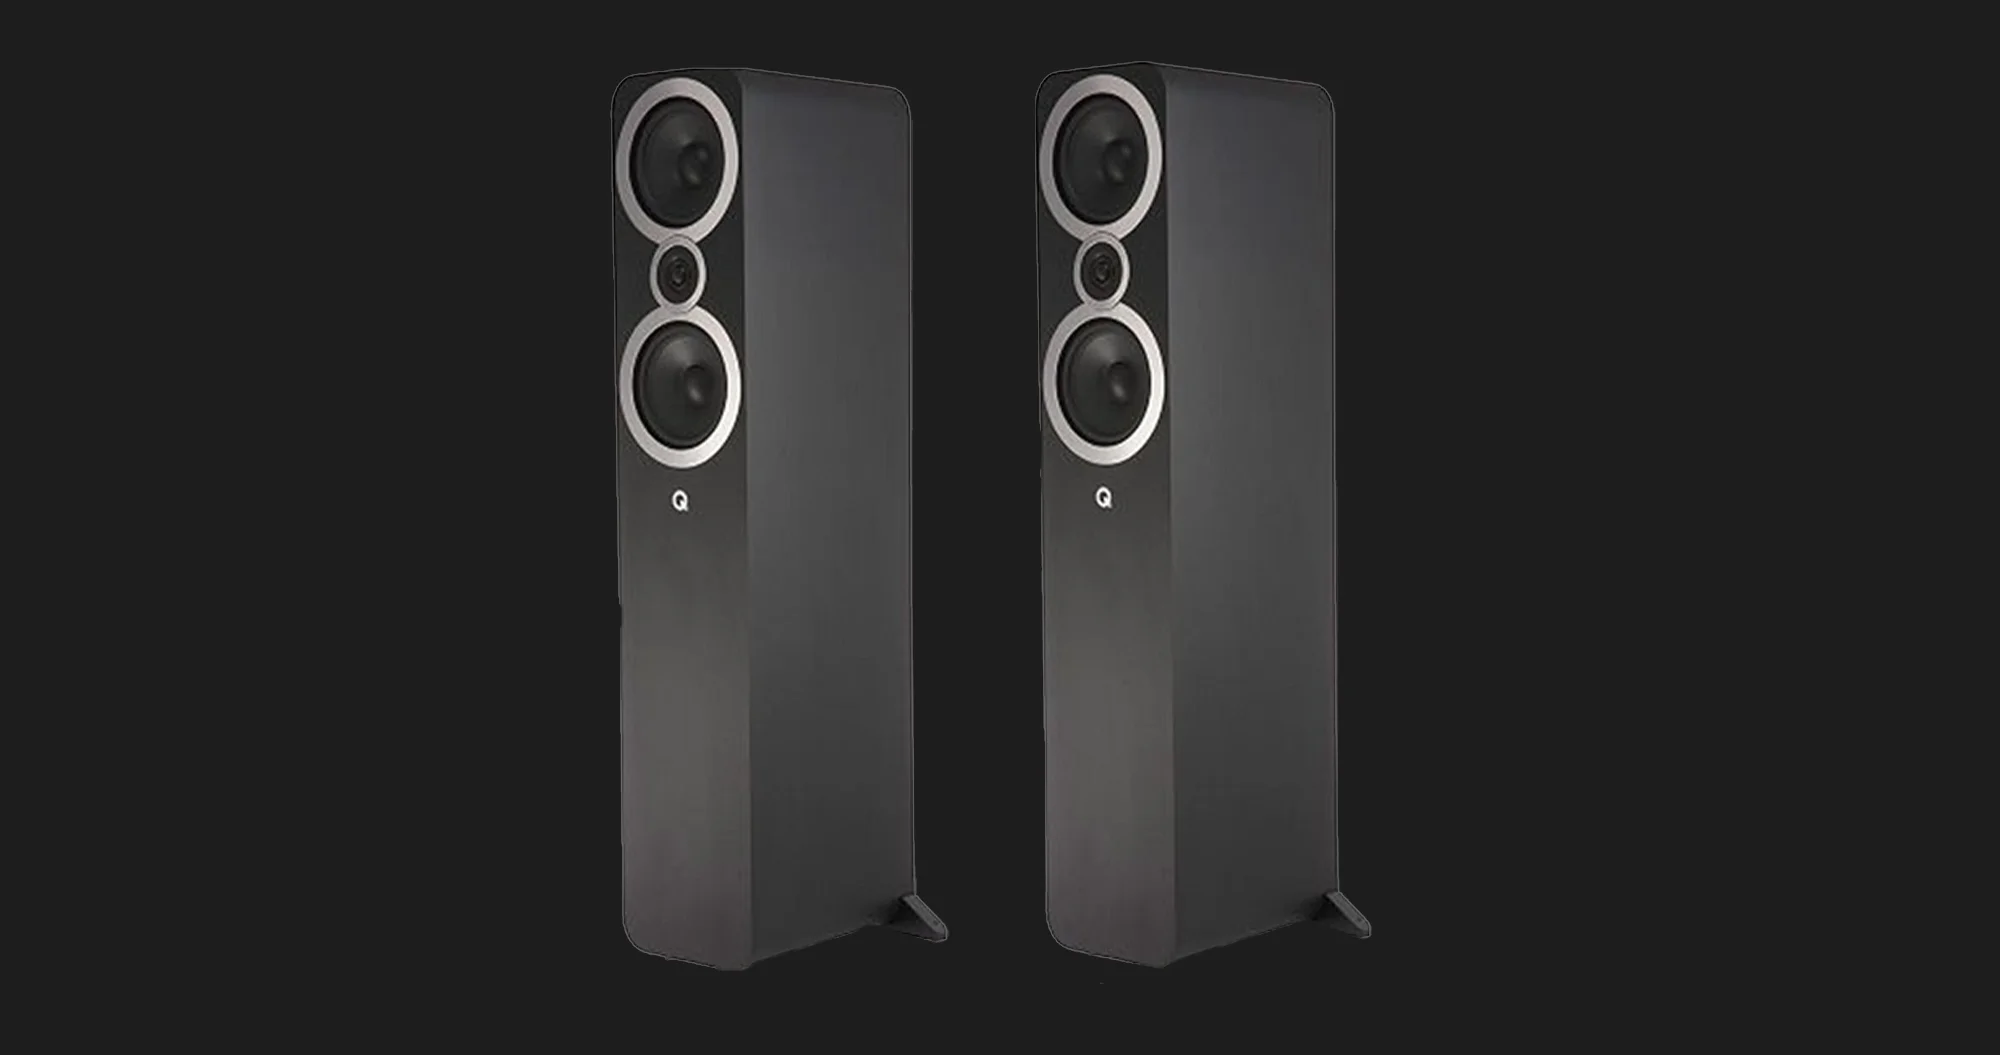 Акустические колонки Q Acoustics 3050i Speaker (Carbon Black) (QA3556)